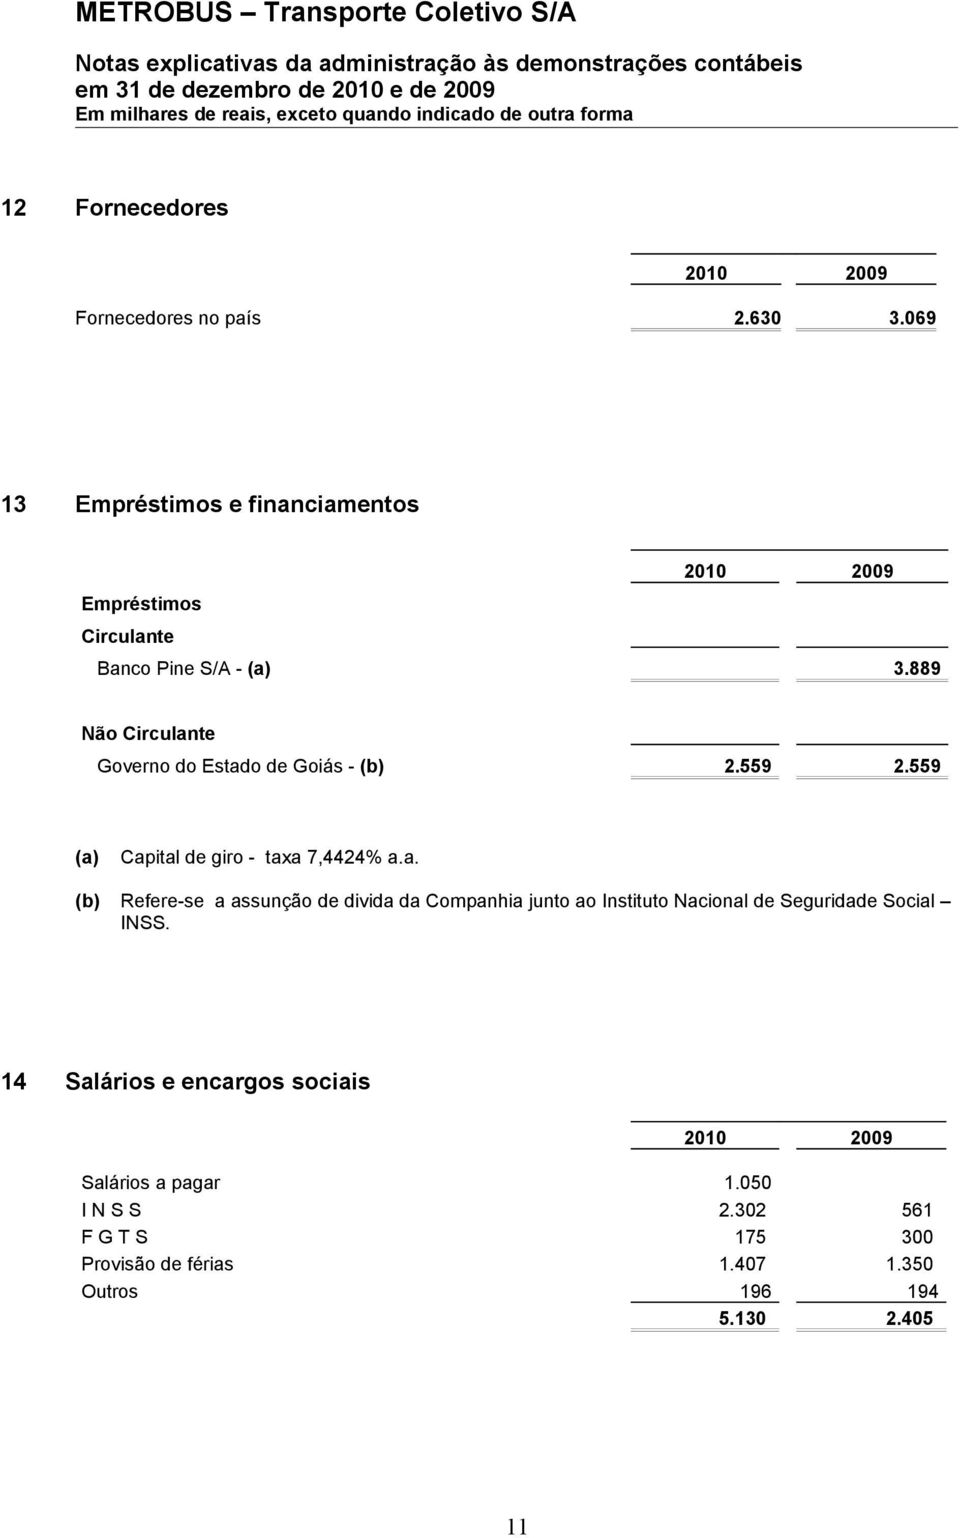 889 Não Circulante Governo do Estado de Goiás - (b) 2.559 2.559 (a) Capital de giro - taxa 7,4424% a.a. (b) Refere-se a assunção de divida da Companhia junto ao Instituto Nacional de Seguridade Social INSS.